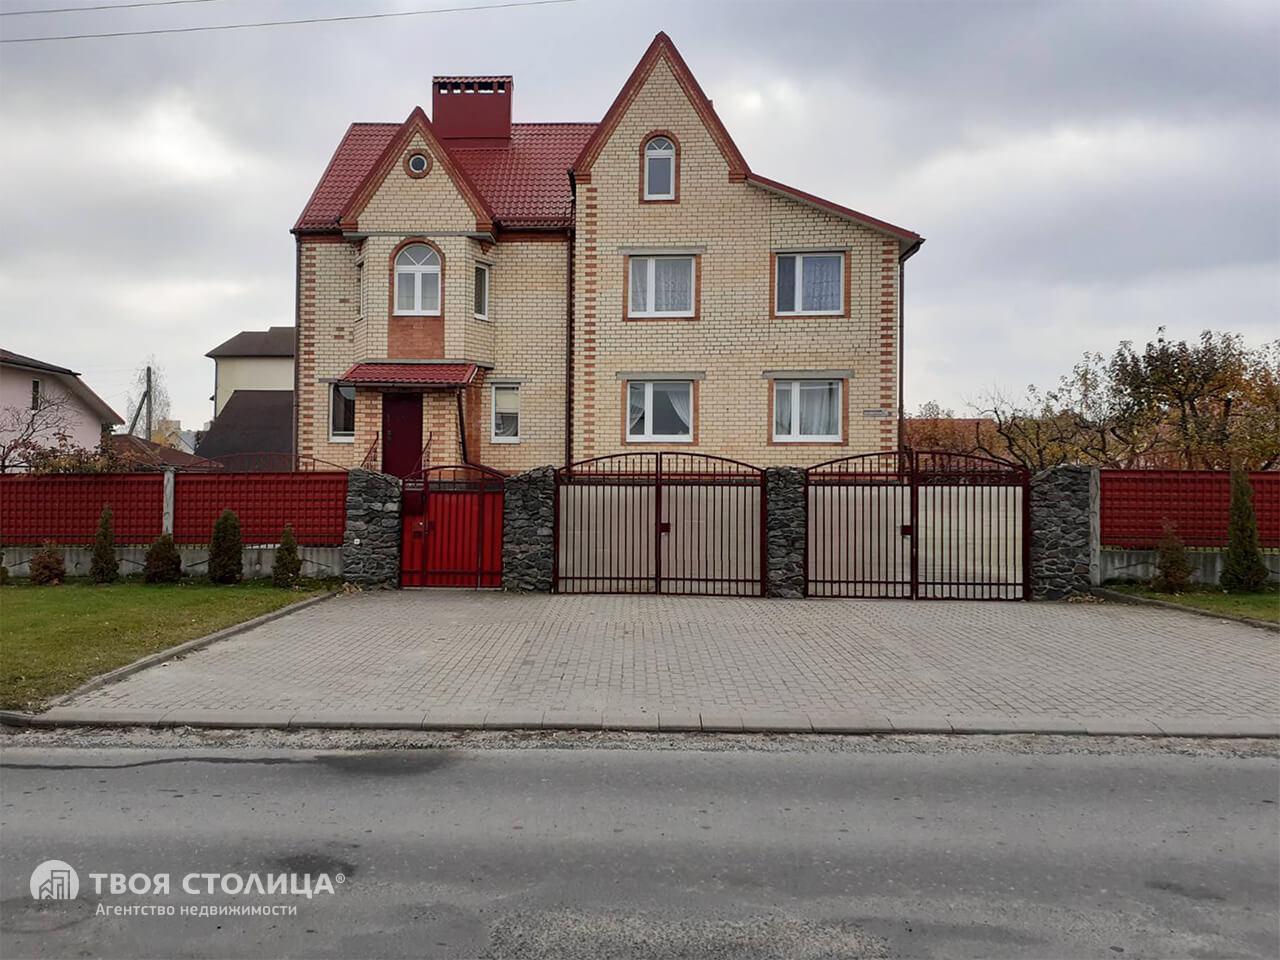 Продать 3-этажный дом в Солигорске, Минская область ул. Славянская, 220000USD - фото 1